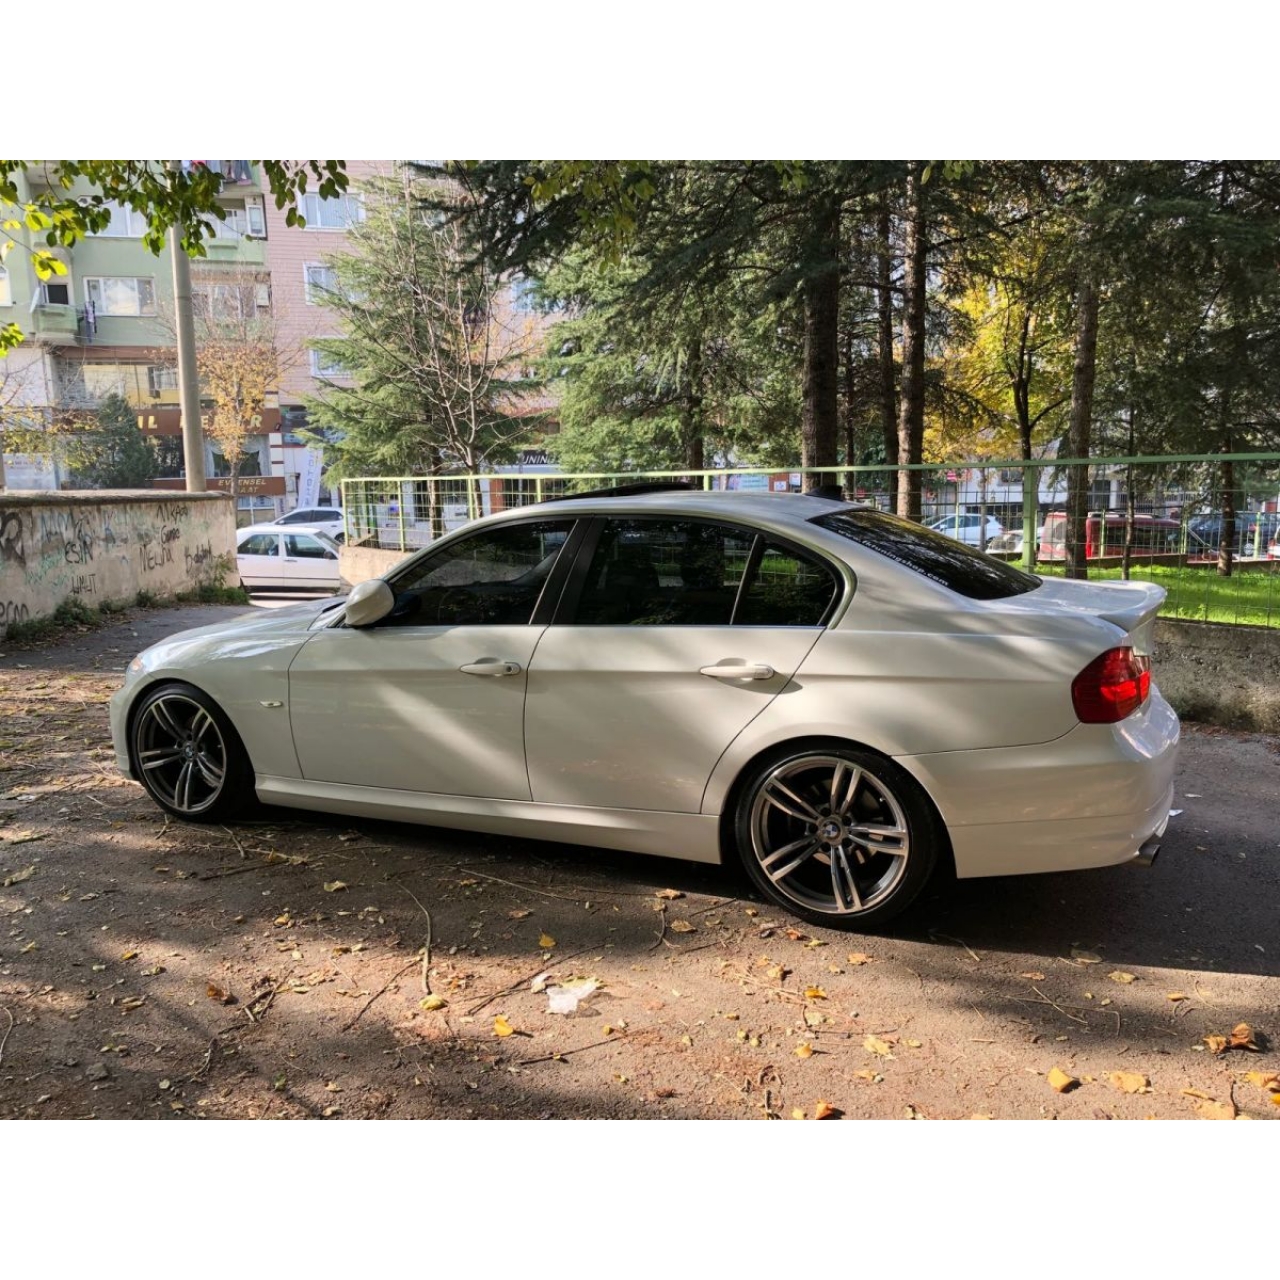 BMW E90 SPOR YAY 5 CM  3 SERİSİ (gerçek resim)